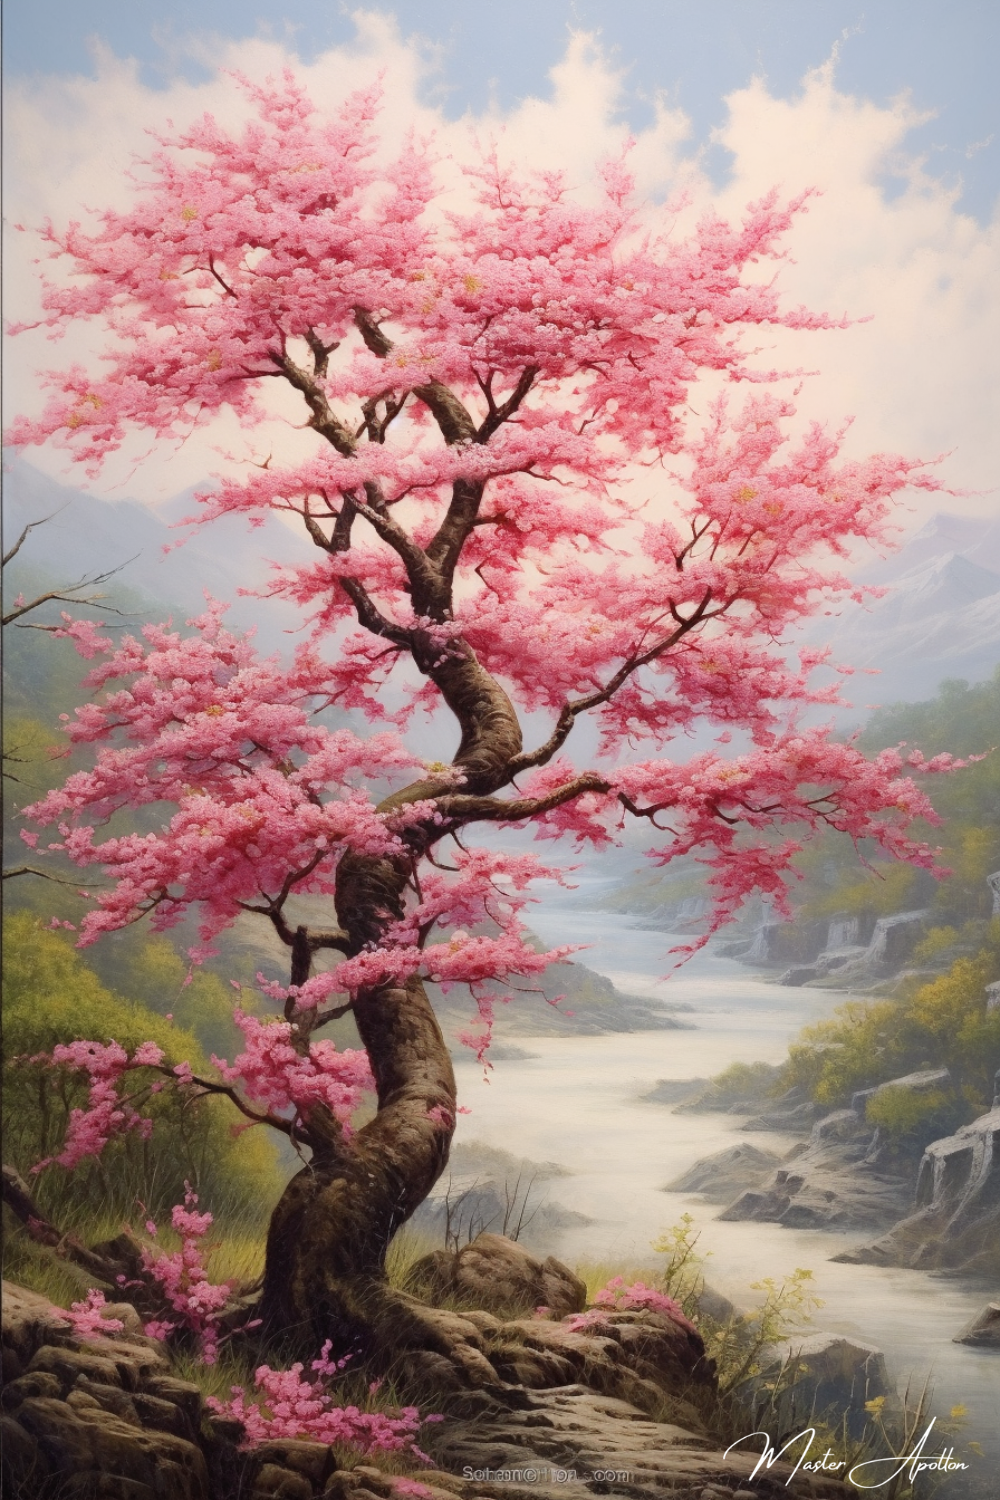 Tableau arbre cerisier japonais et rivière